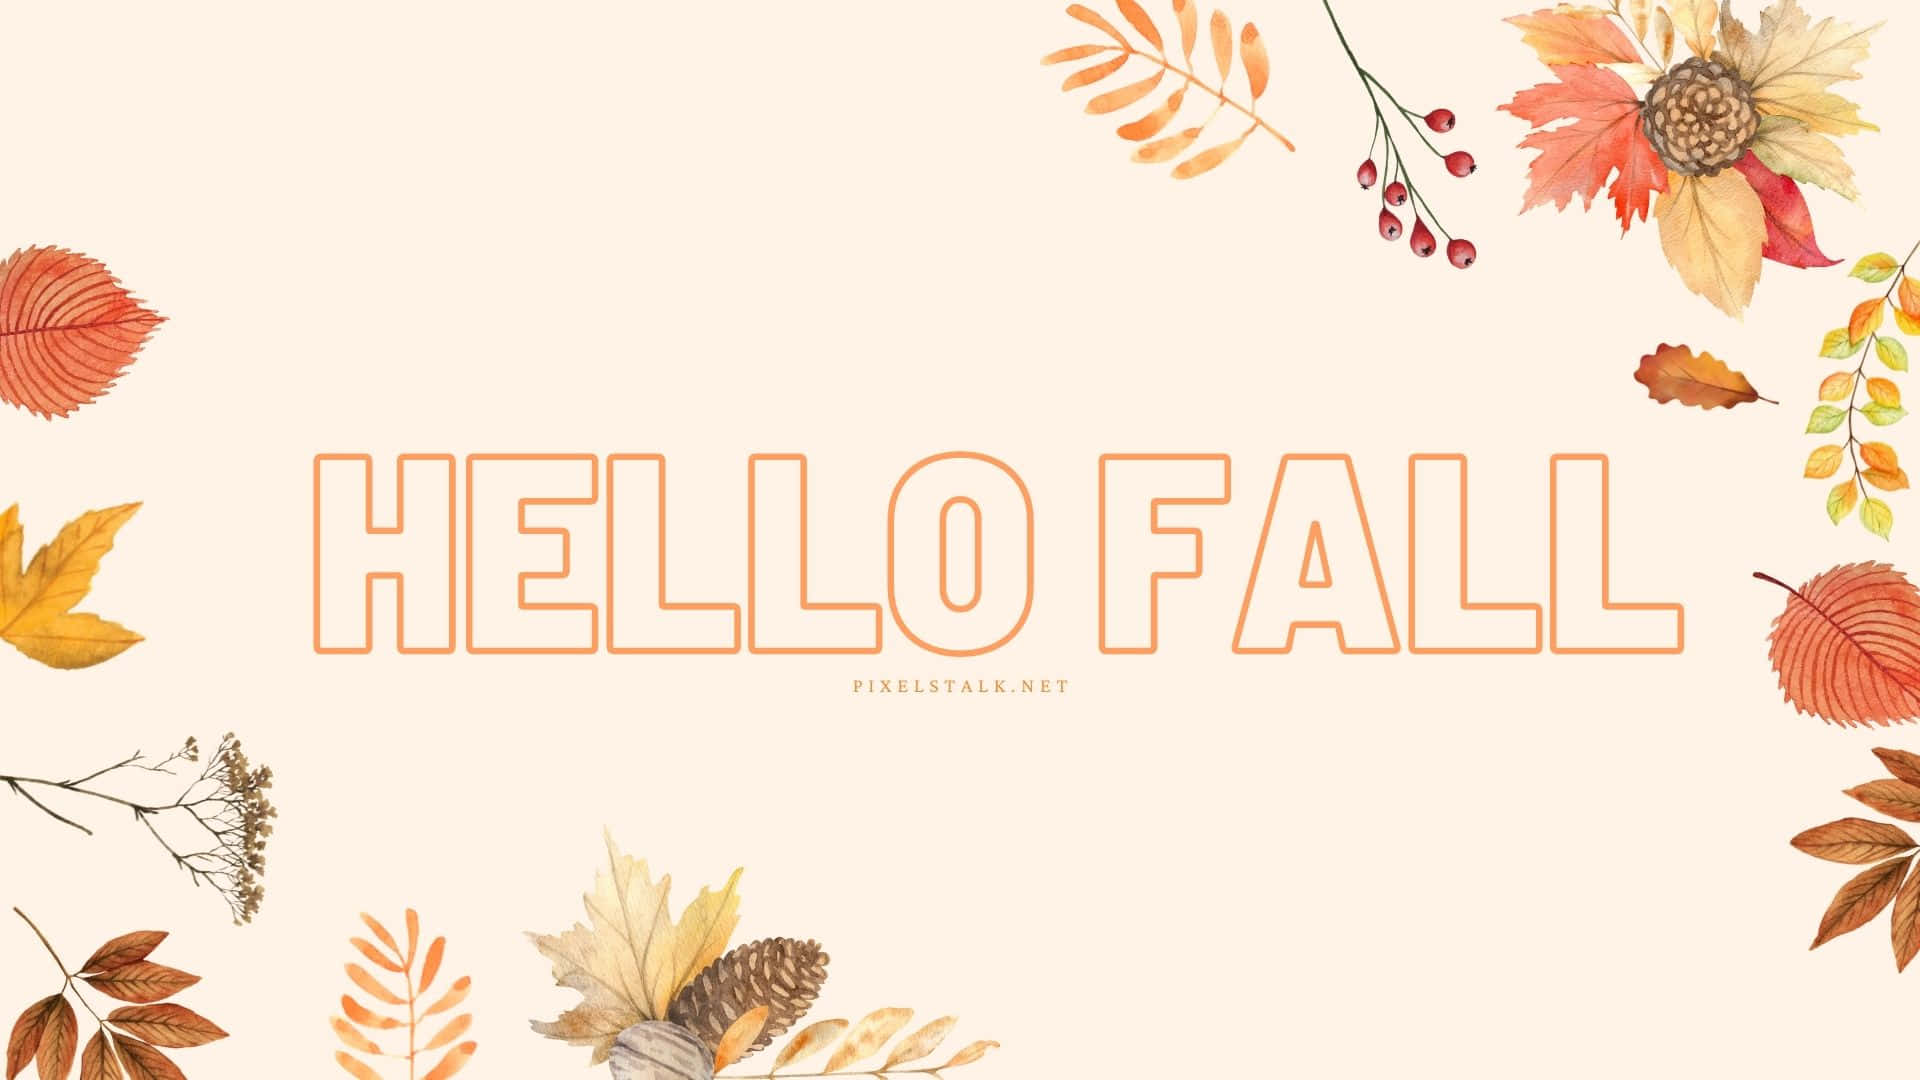 hello kitty fall/autumn wallpaper ^^